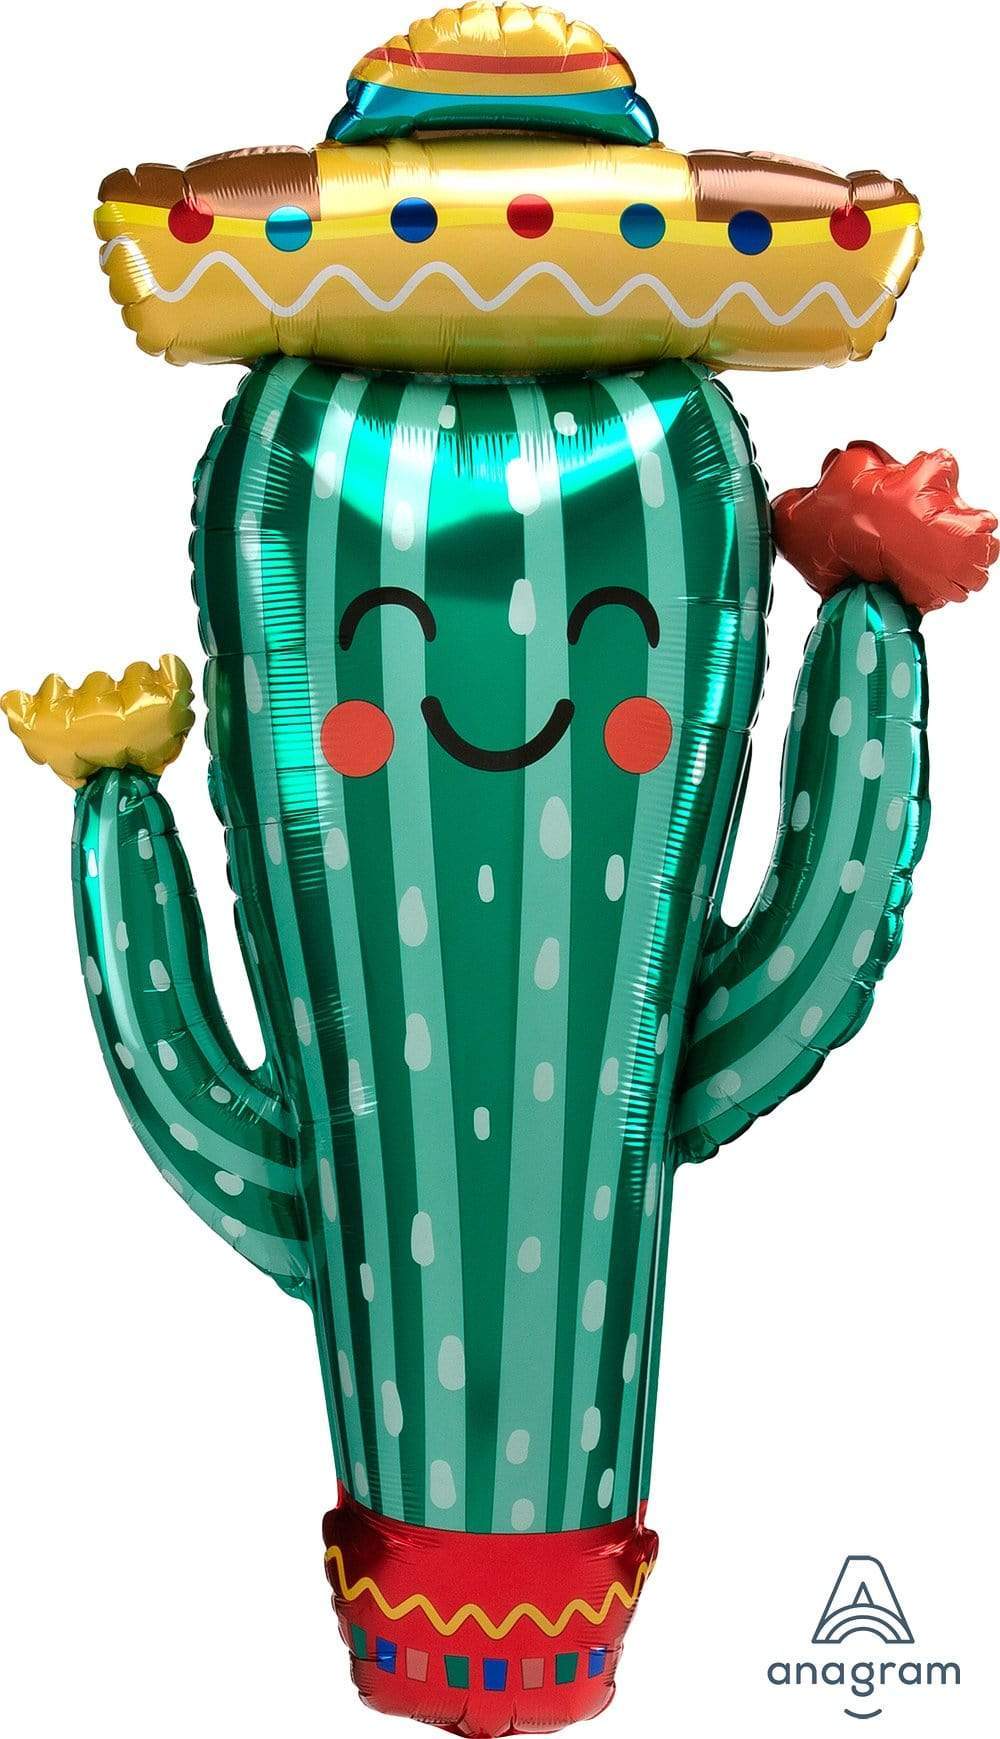 Fiesta Cactus